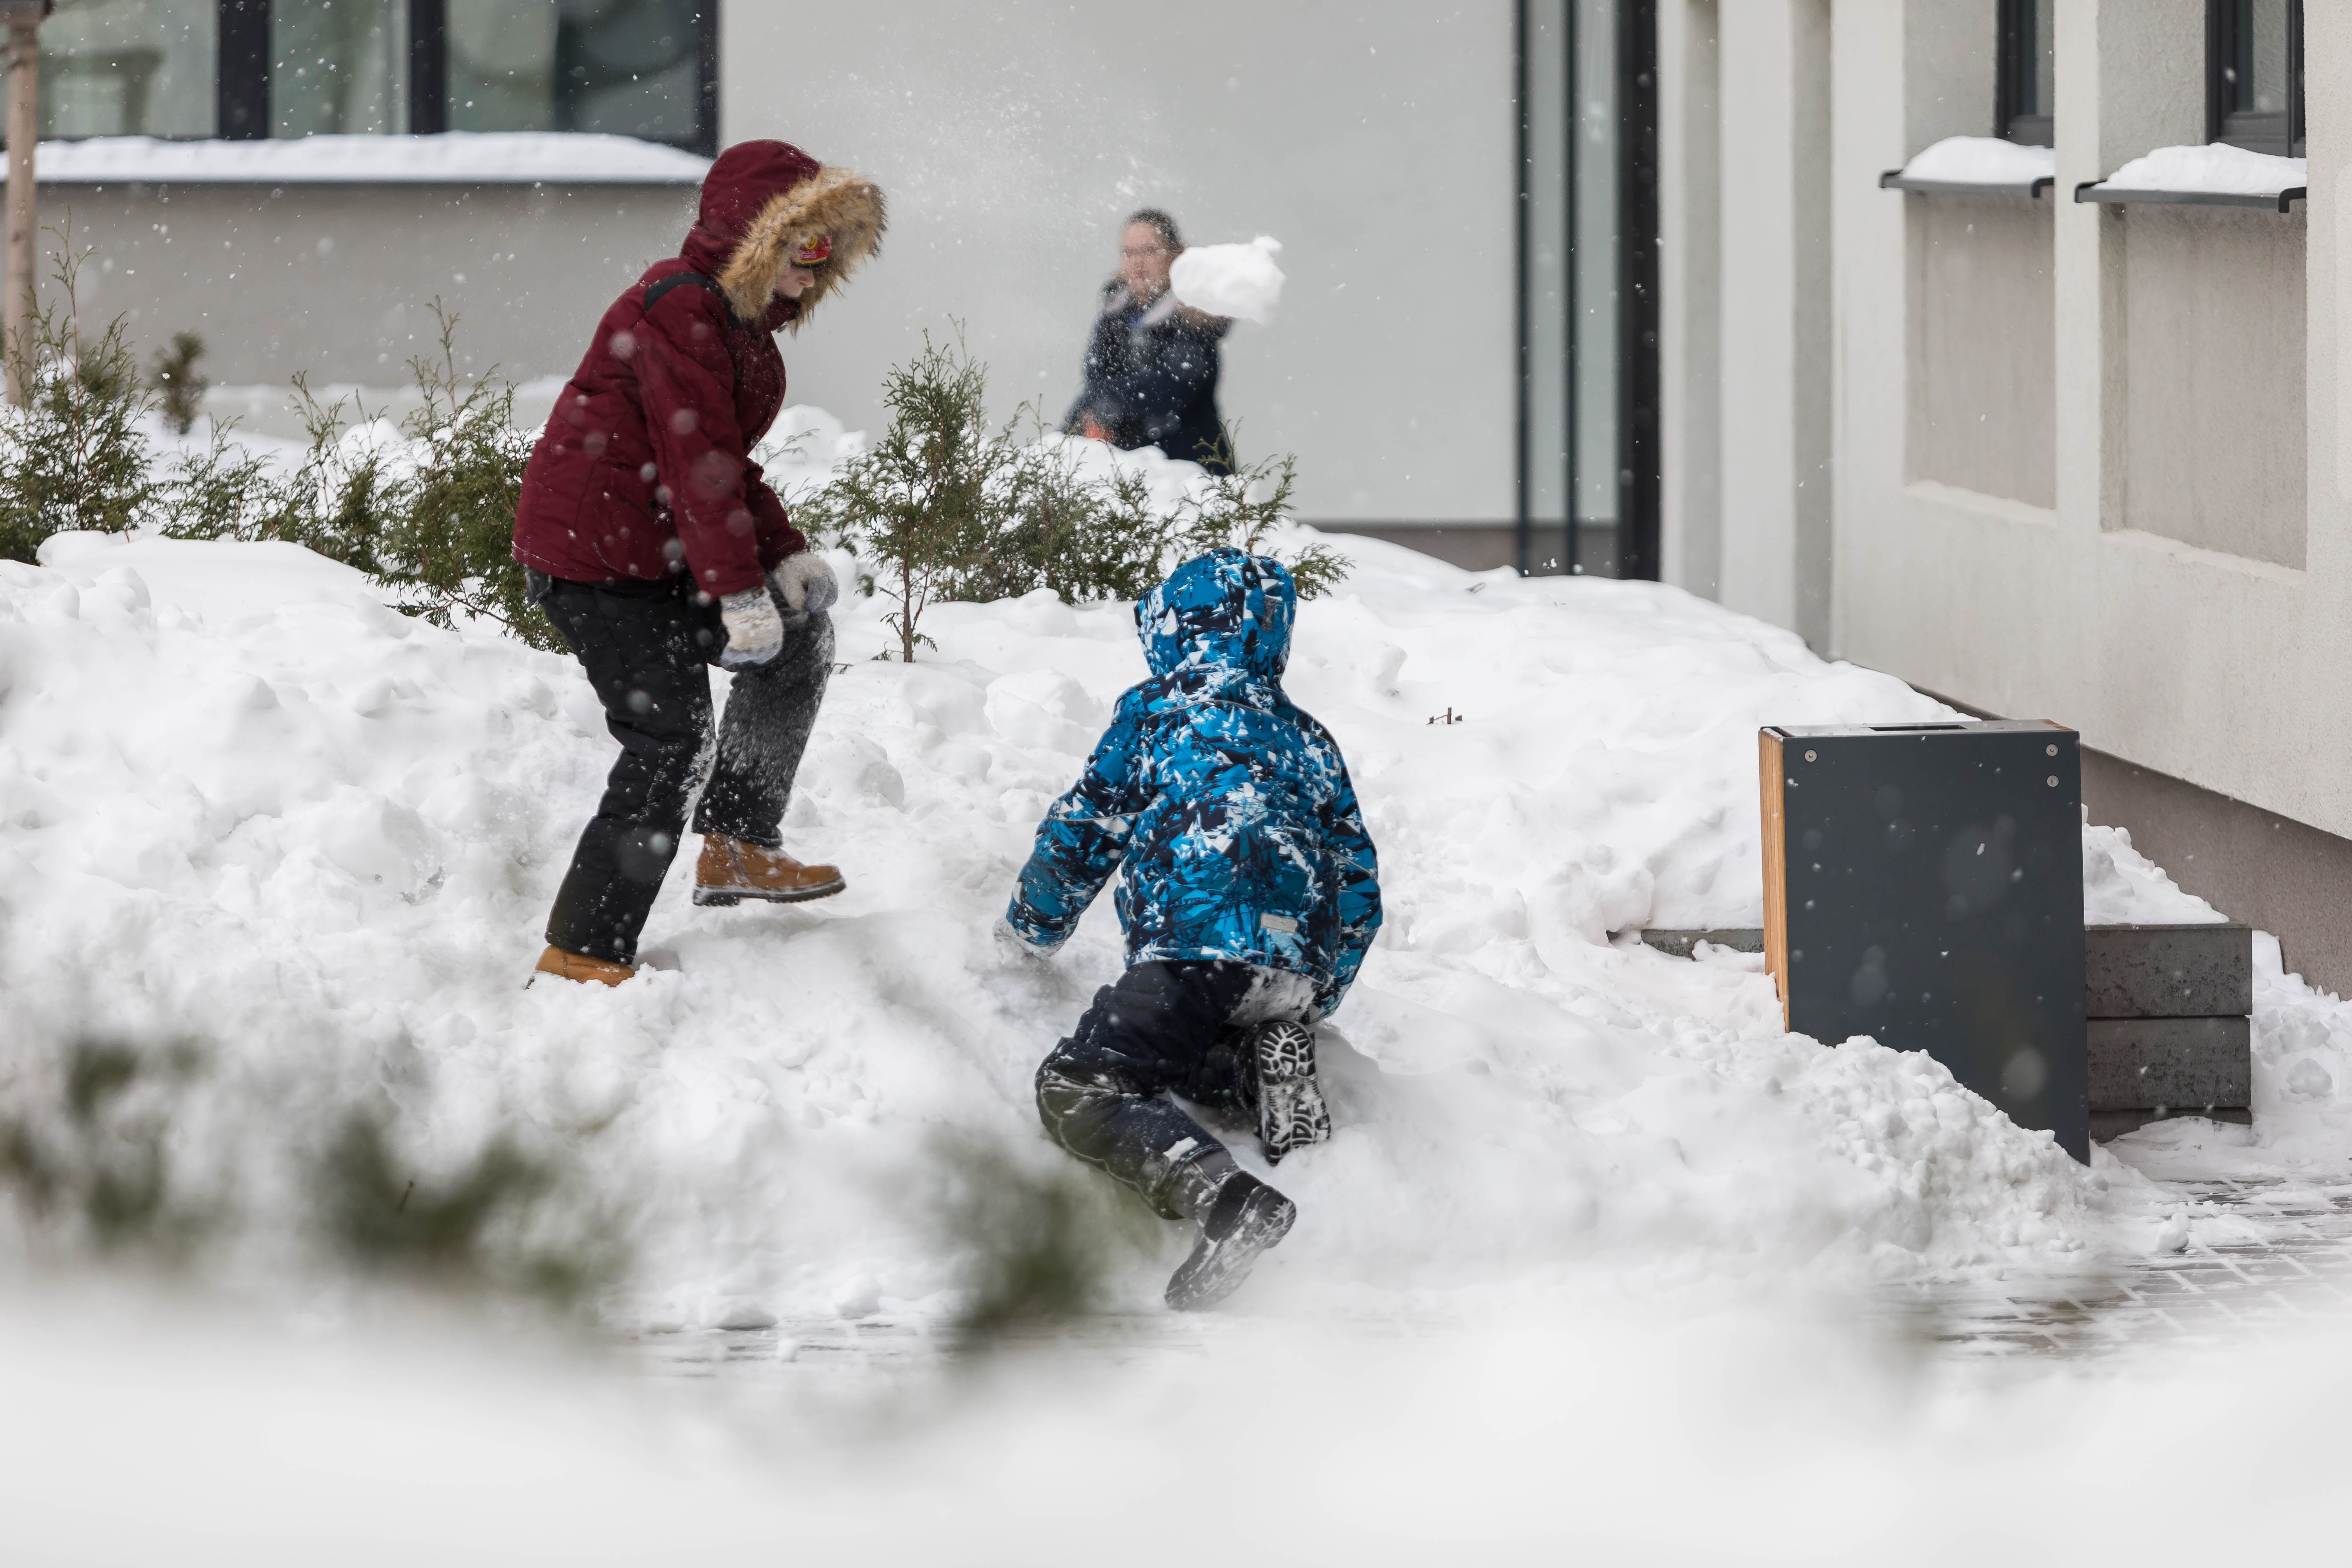 Играть в снежки кататься. Зимние игры во дворе. Игра в снежки. Дети во дворе зимой. Прогулка во дворе.